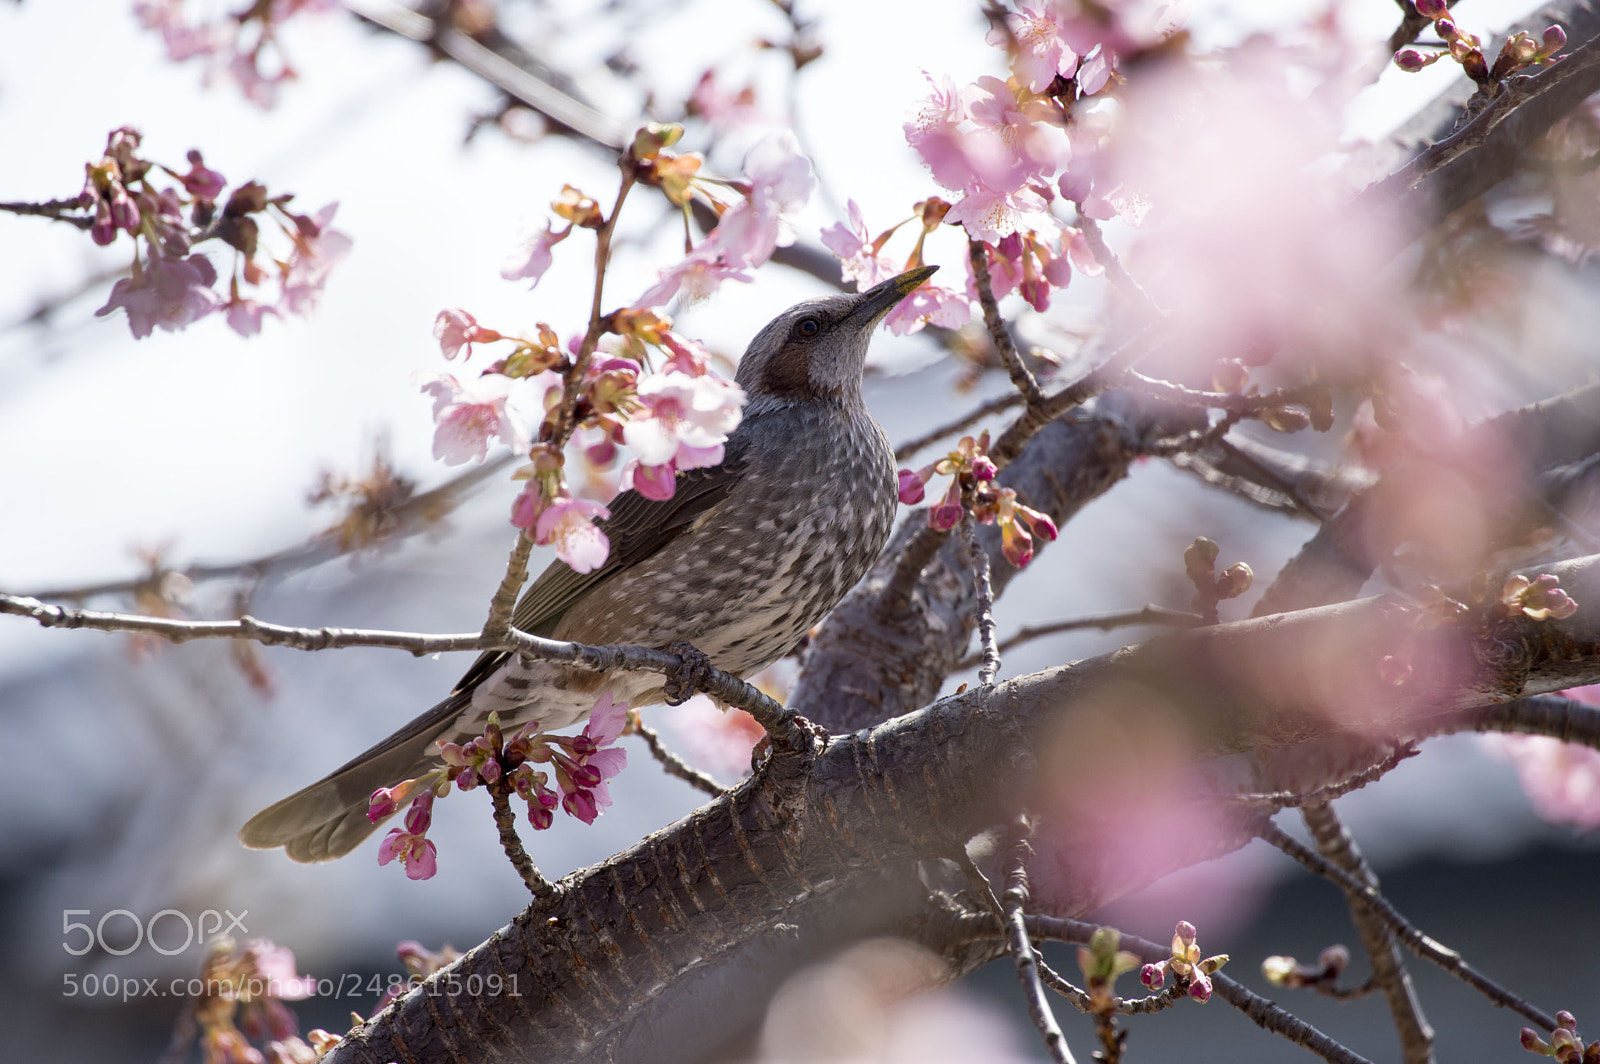 Pentax KP sample photo. Sakura and bird photography